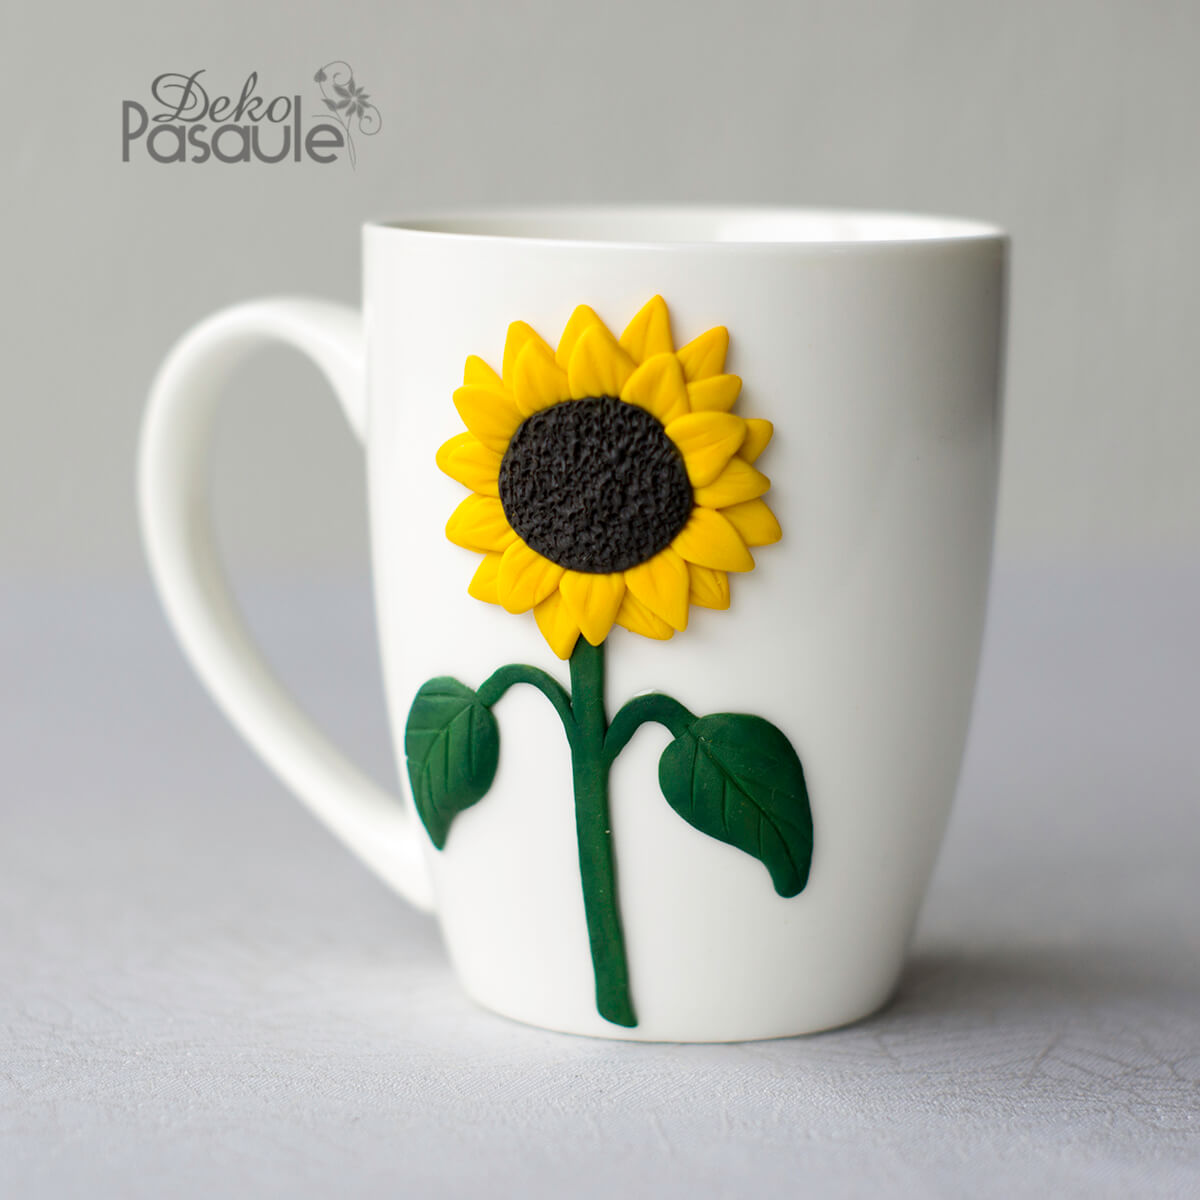 Awesome Sunflower Mug Decor Idea Using Polymer Clay - Crafting a Mug with Polymer Clay